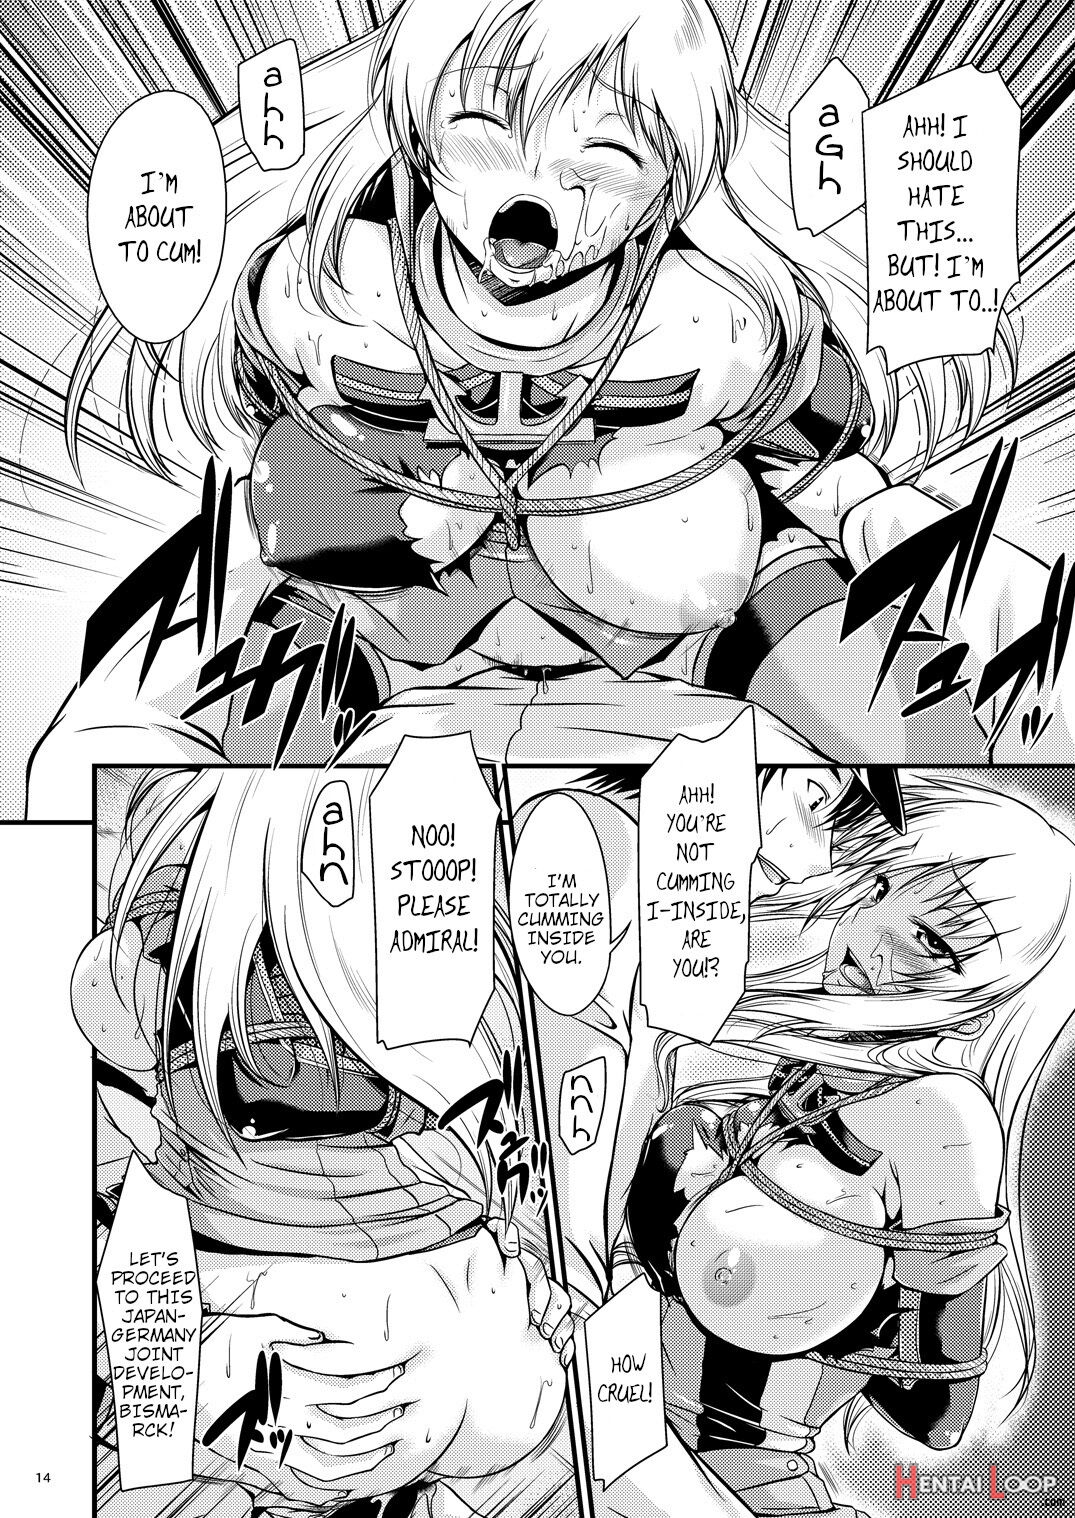 Battleship Rape - Bismarck - page 13